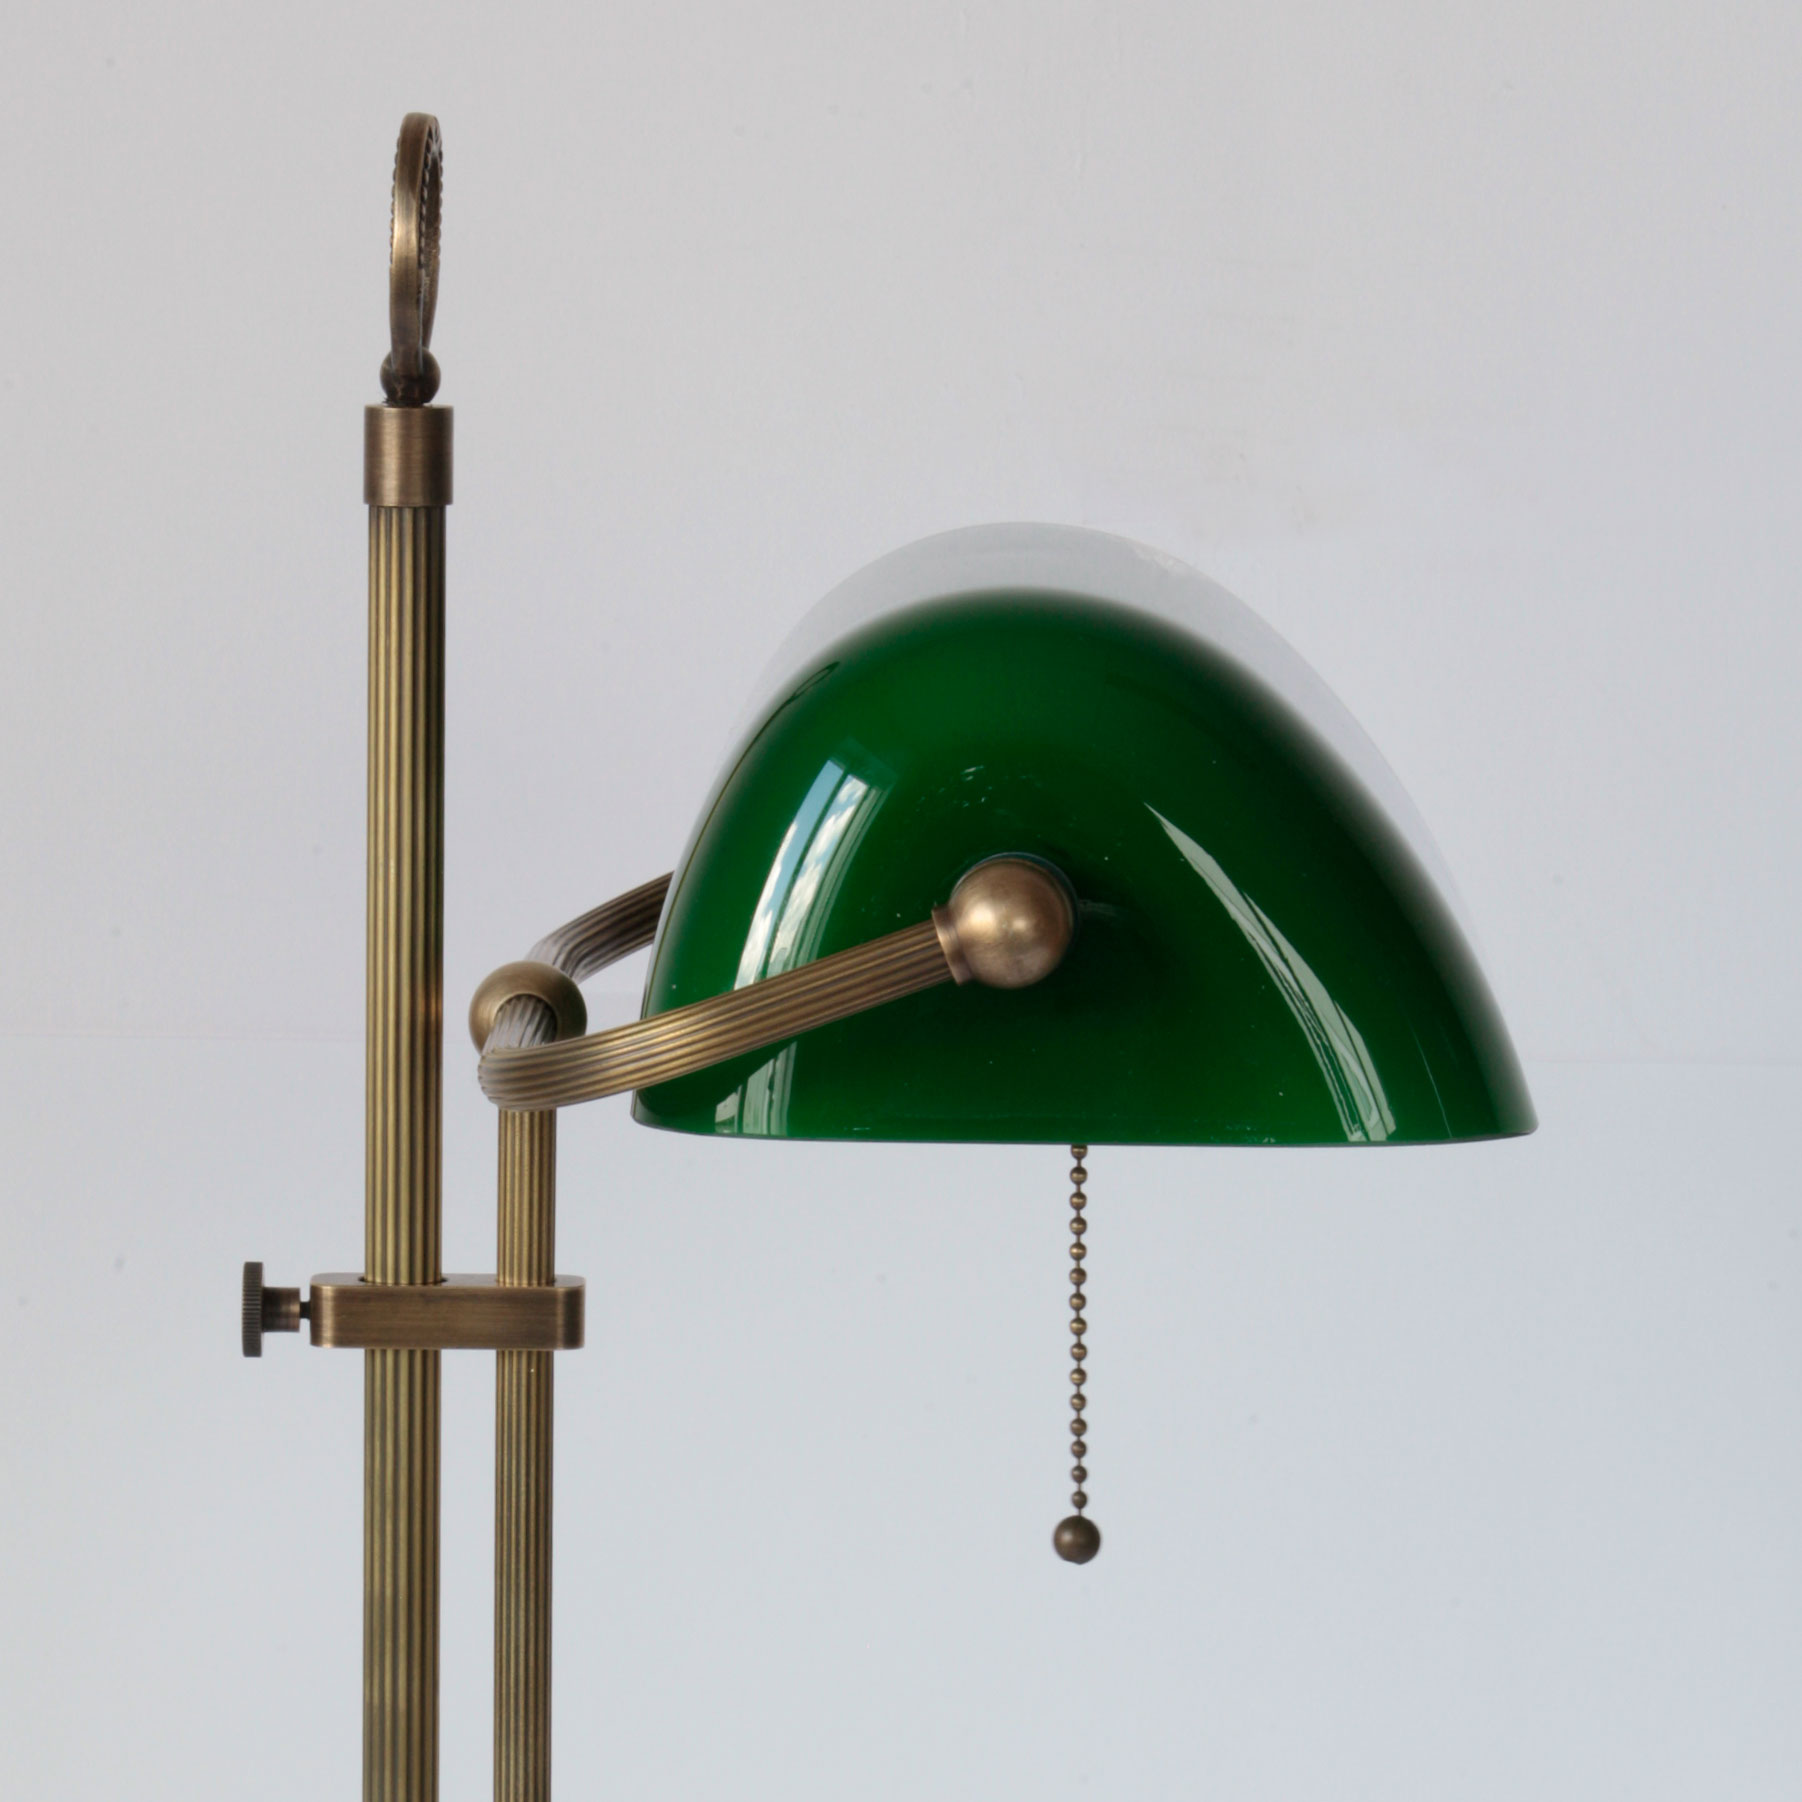 Banker’s Lamp – klassische Schreibtischleuchte mit Glasschirm: Die klassische Tischleuchte wird mit einem stilechten Zug-Kettchen aus Messingperlen geschaltet